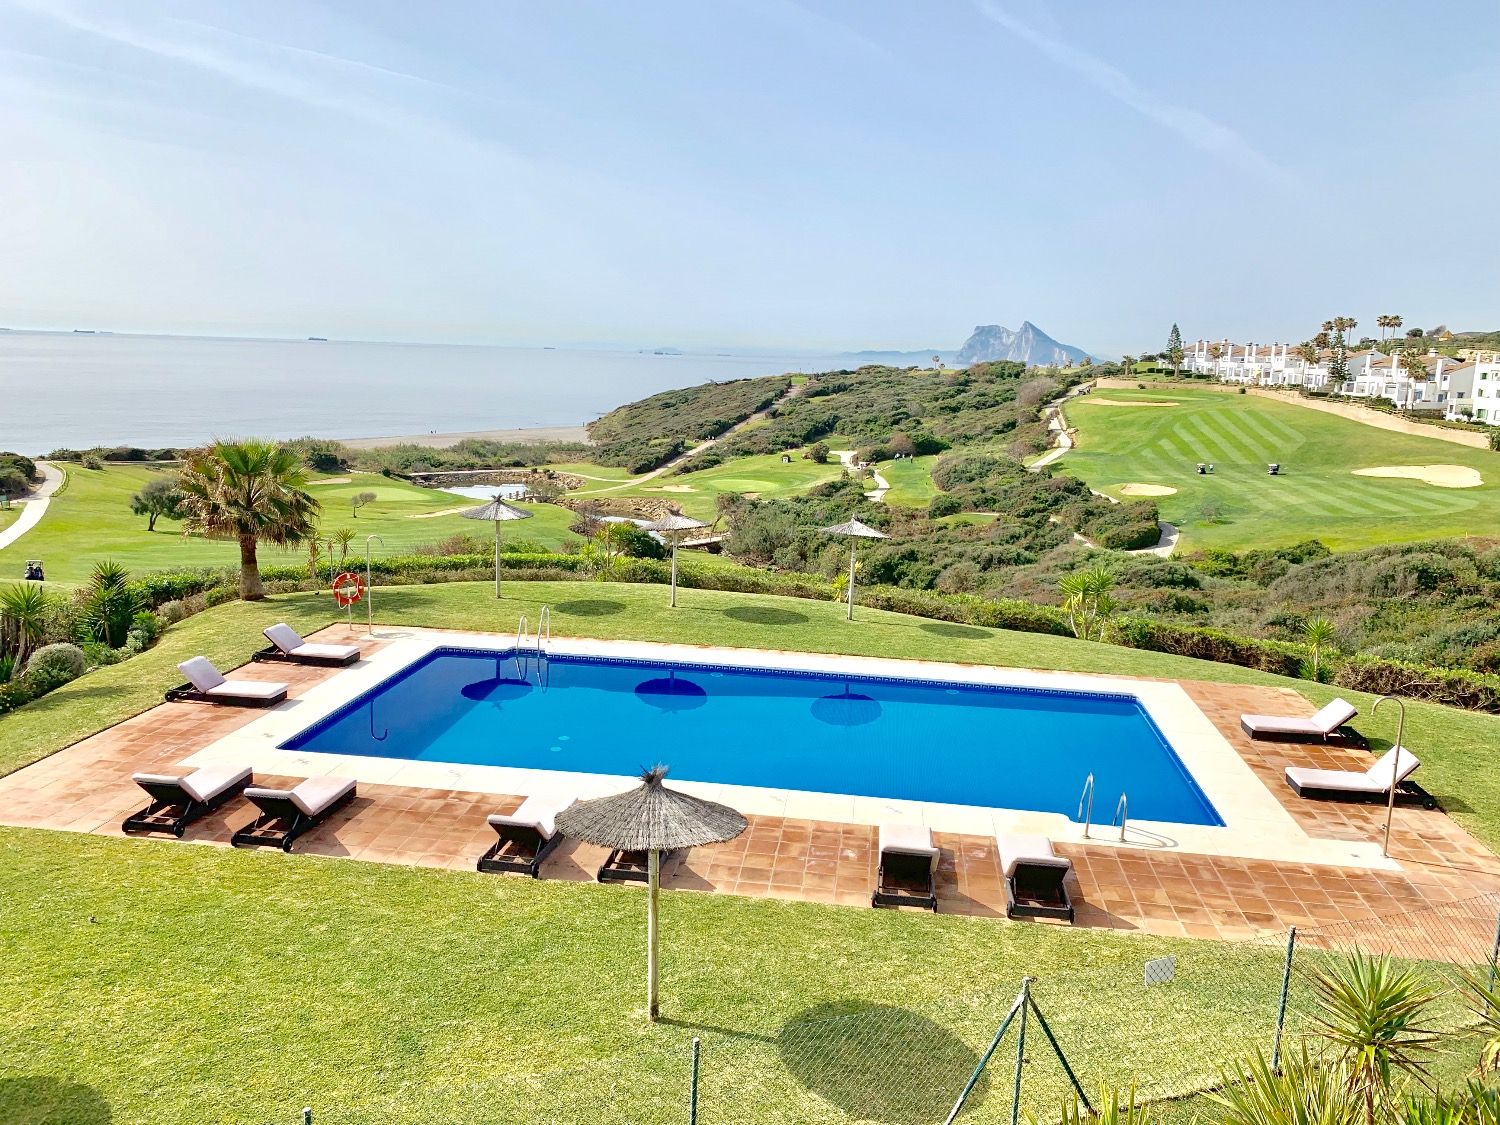 Posizione irripetibile di questo bellissimo appartamento sulla spiaggia di Alcaidesa con spettacolari viste sul mare